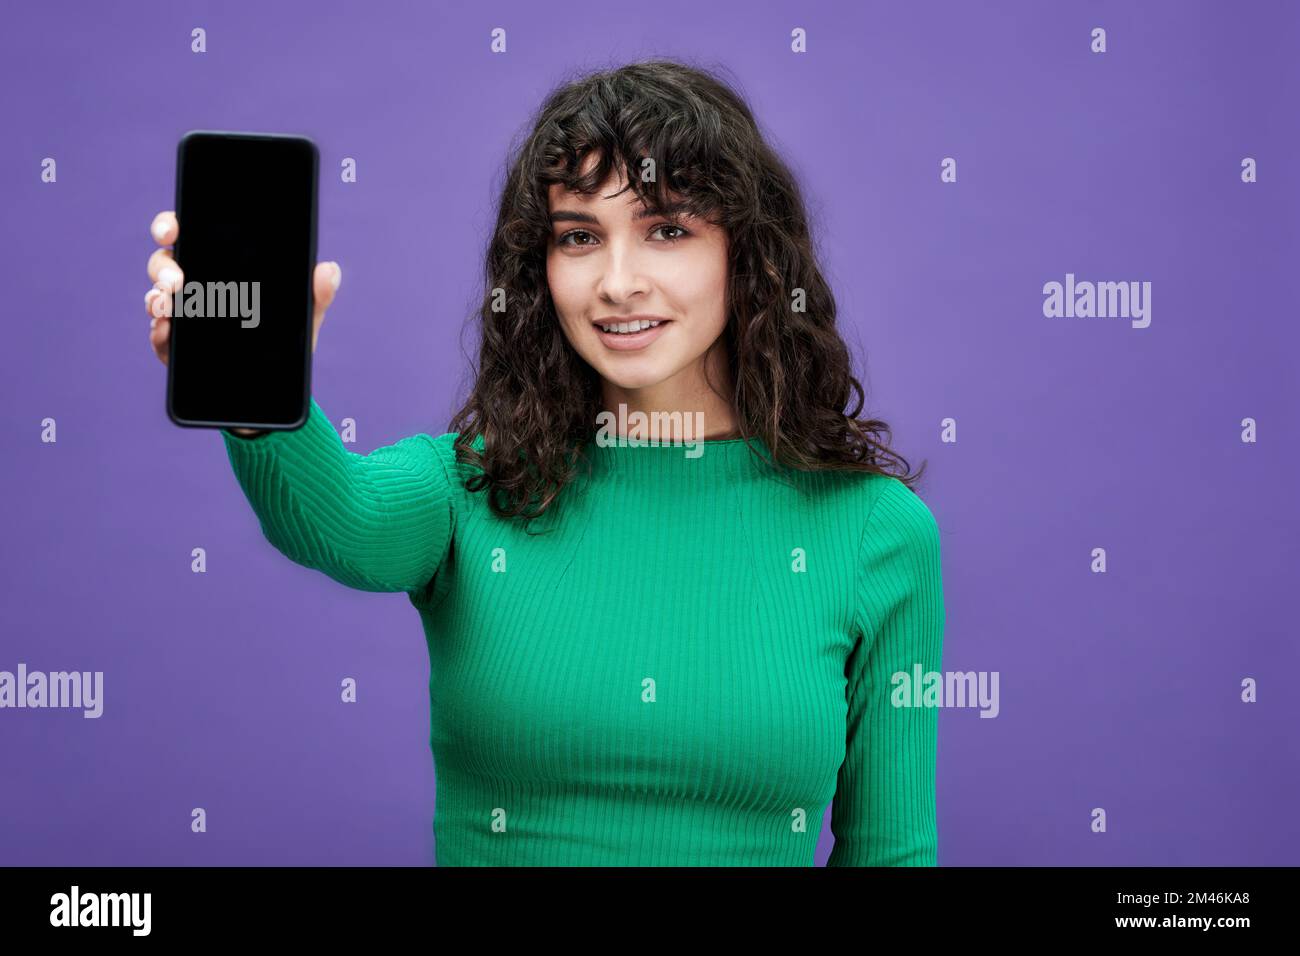 Chica morena en pullover verde con mangas largas sosteniendo smartphone mientras hace la presentación del anuncio de venta sobre fondo violeta Foto de stock